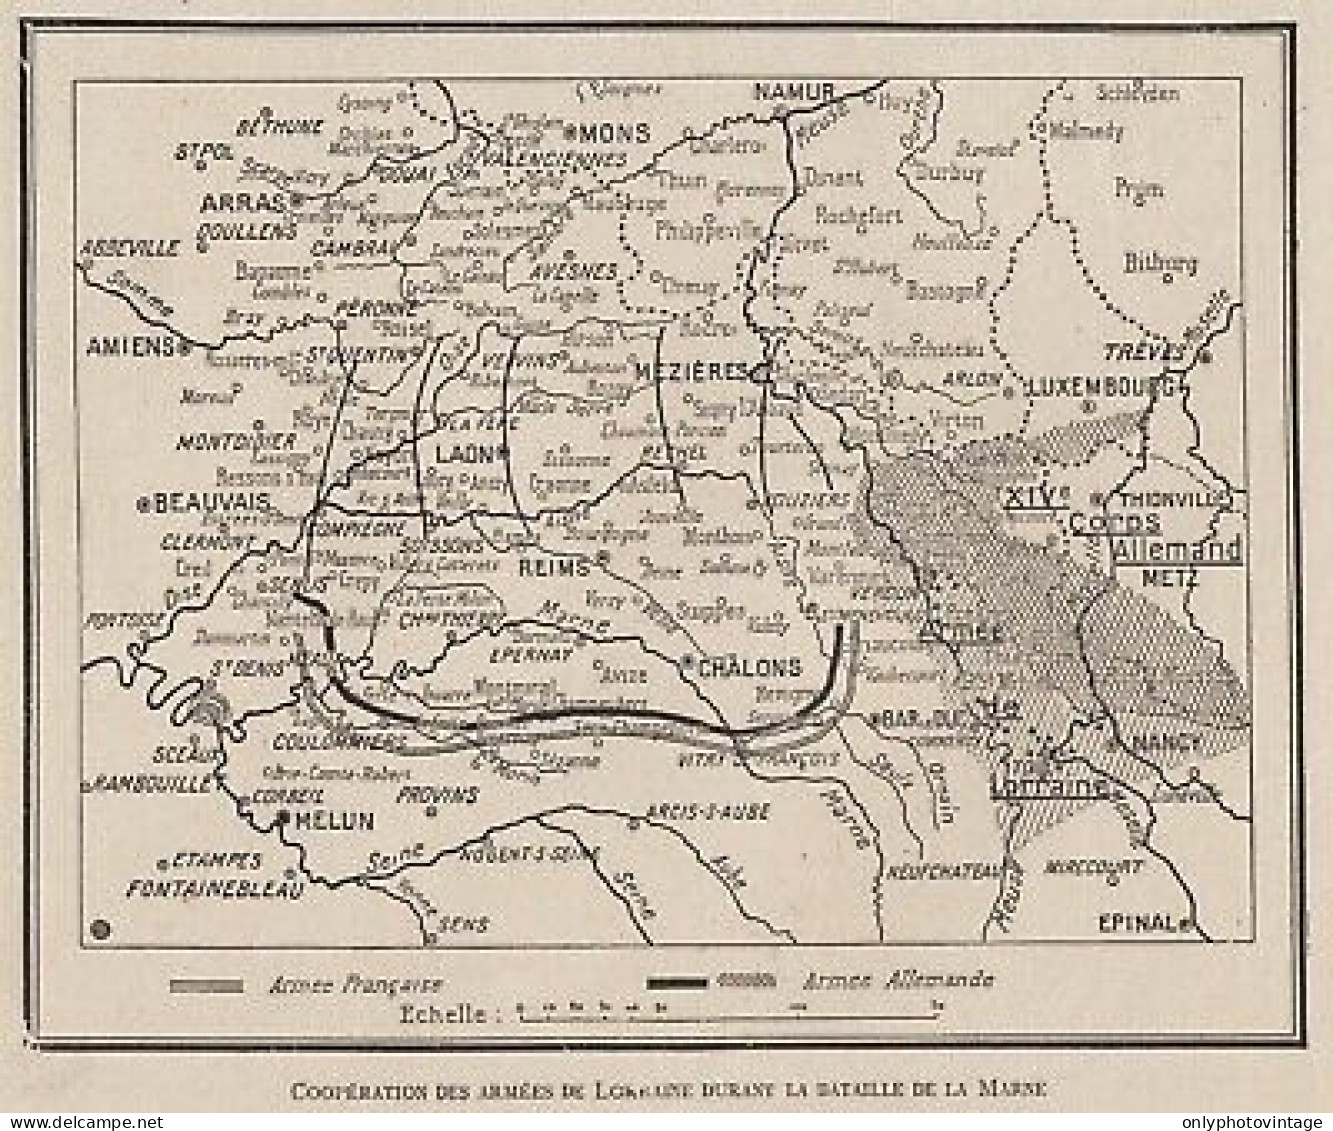 Cooperation Des Armées De Lorraine Durant Bataille De La Marne - 1915 Map - Carte Geographique